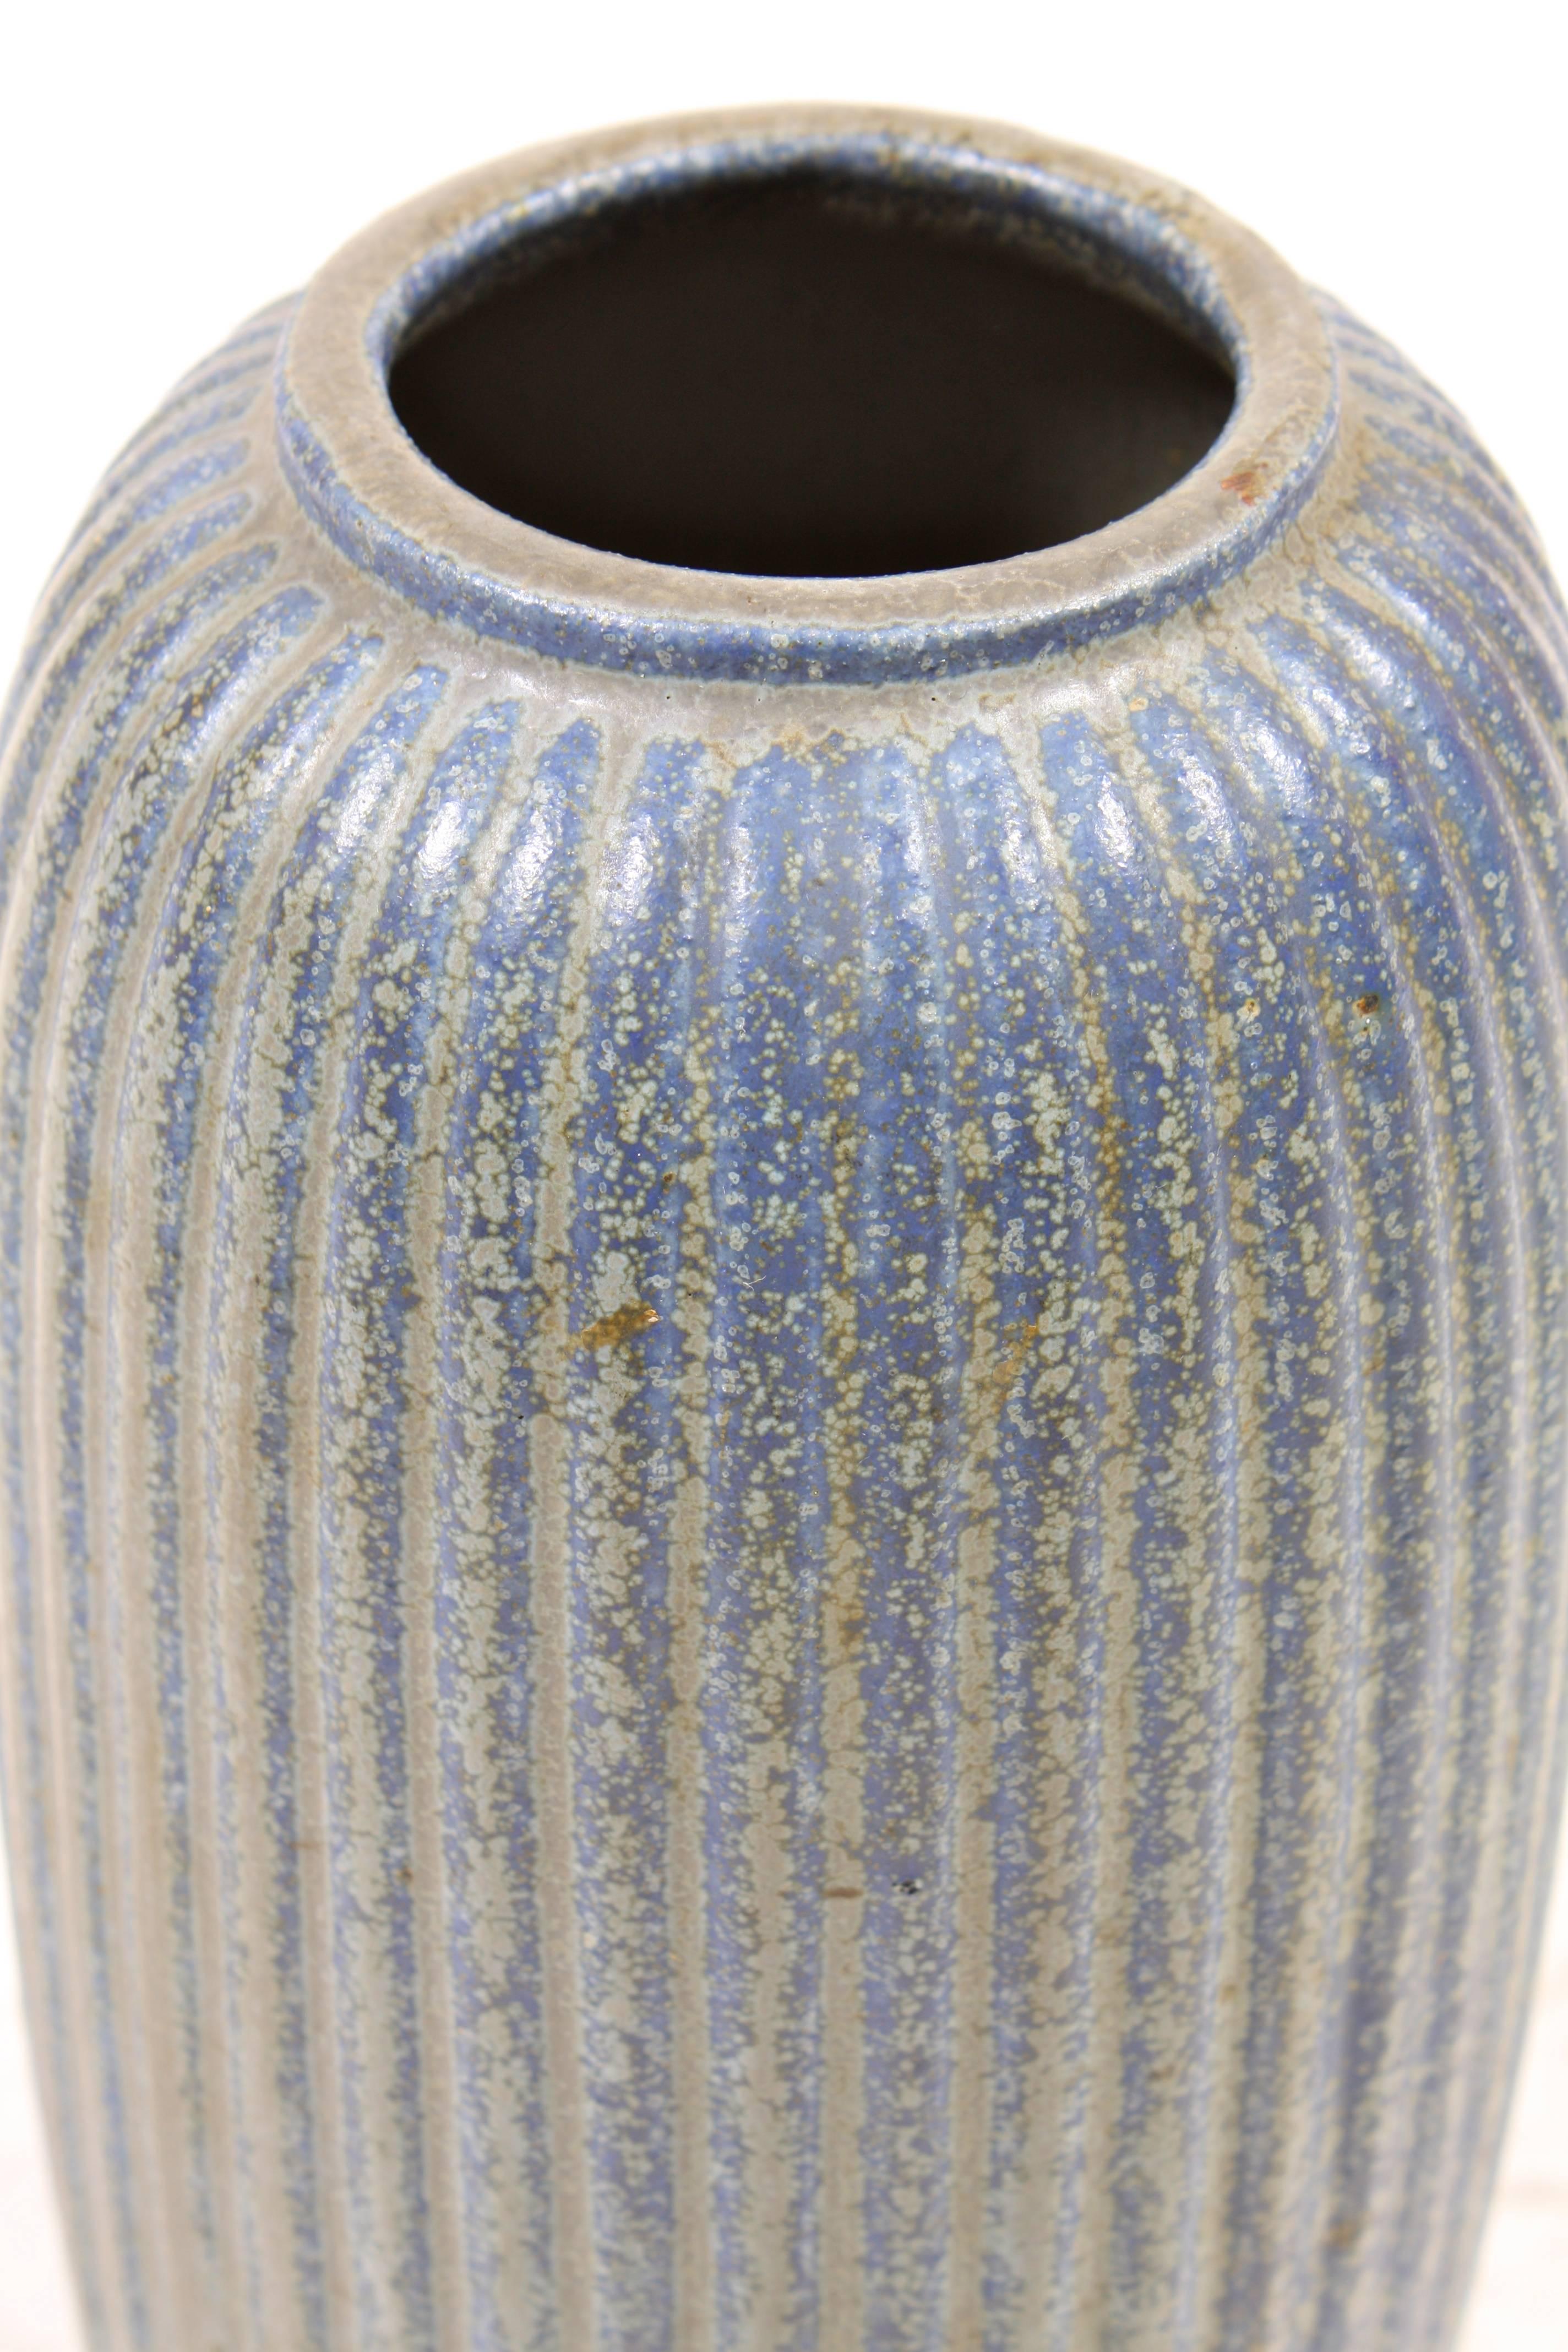 Scandinavian Modern Stoneware Vase by Arne Bang